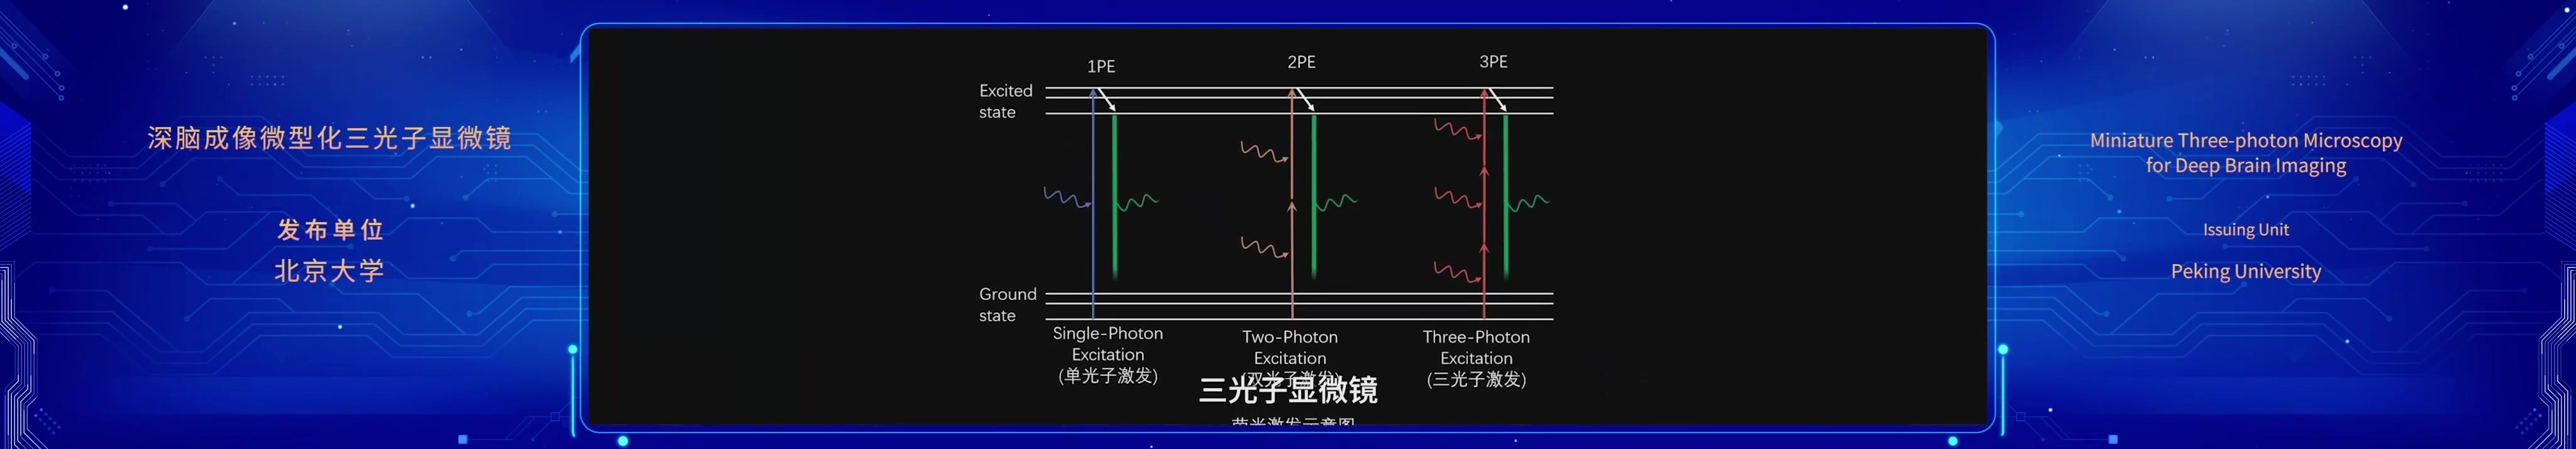 中关村论坛重大成果发布会-微型化 三光子显微镜.mp4